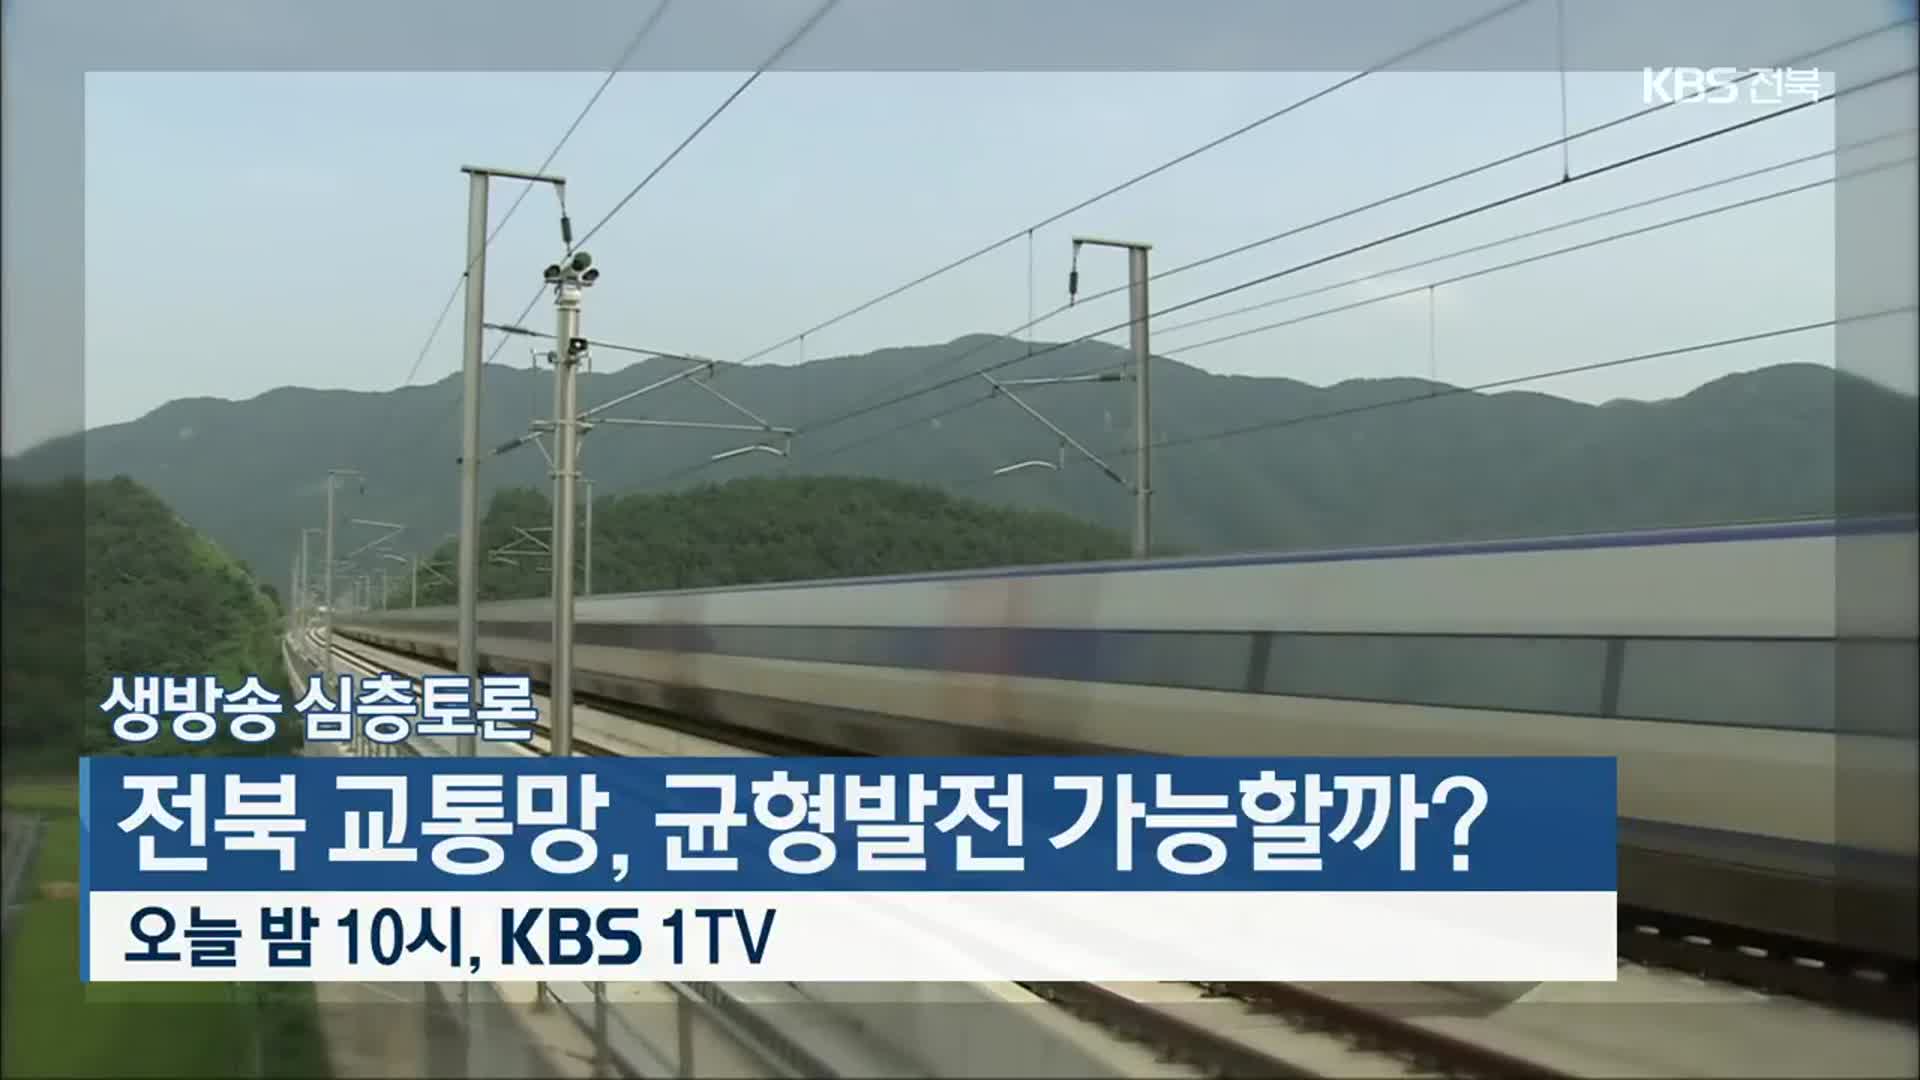 [생방송 심층토론] 전북 교통망, 균형발전 가능할까? 오늘 밤 10시 방송